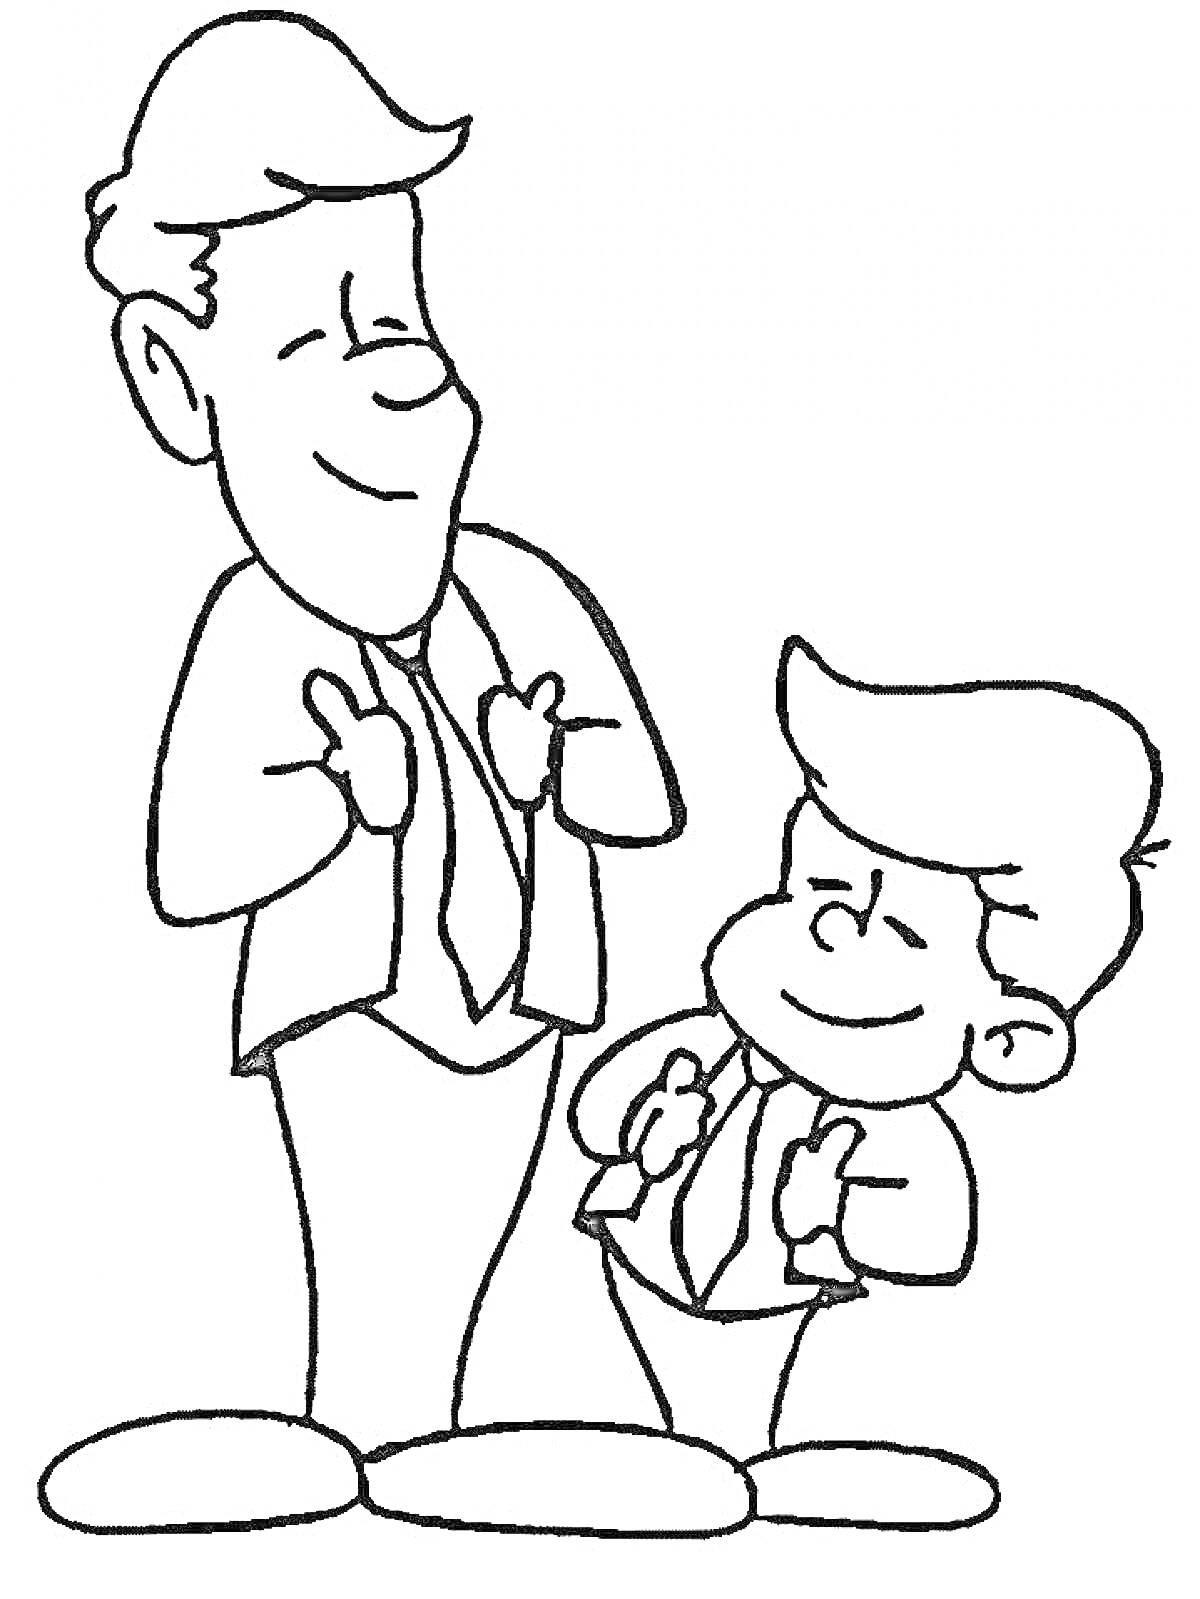 Папа и сын в галстуках